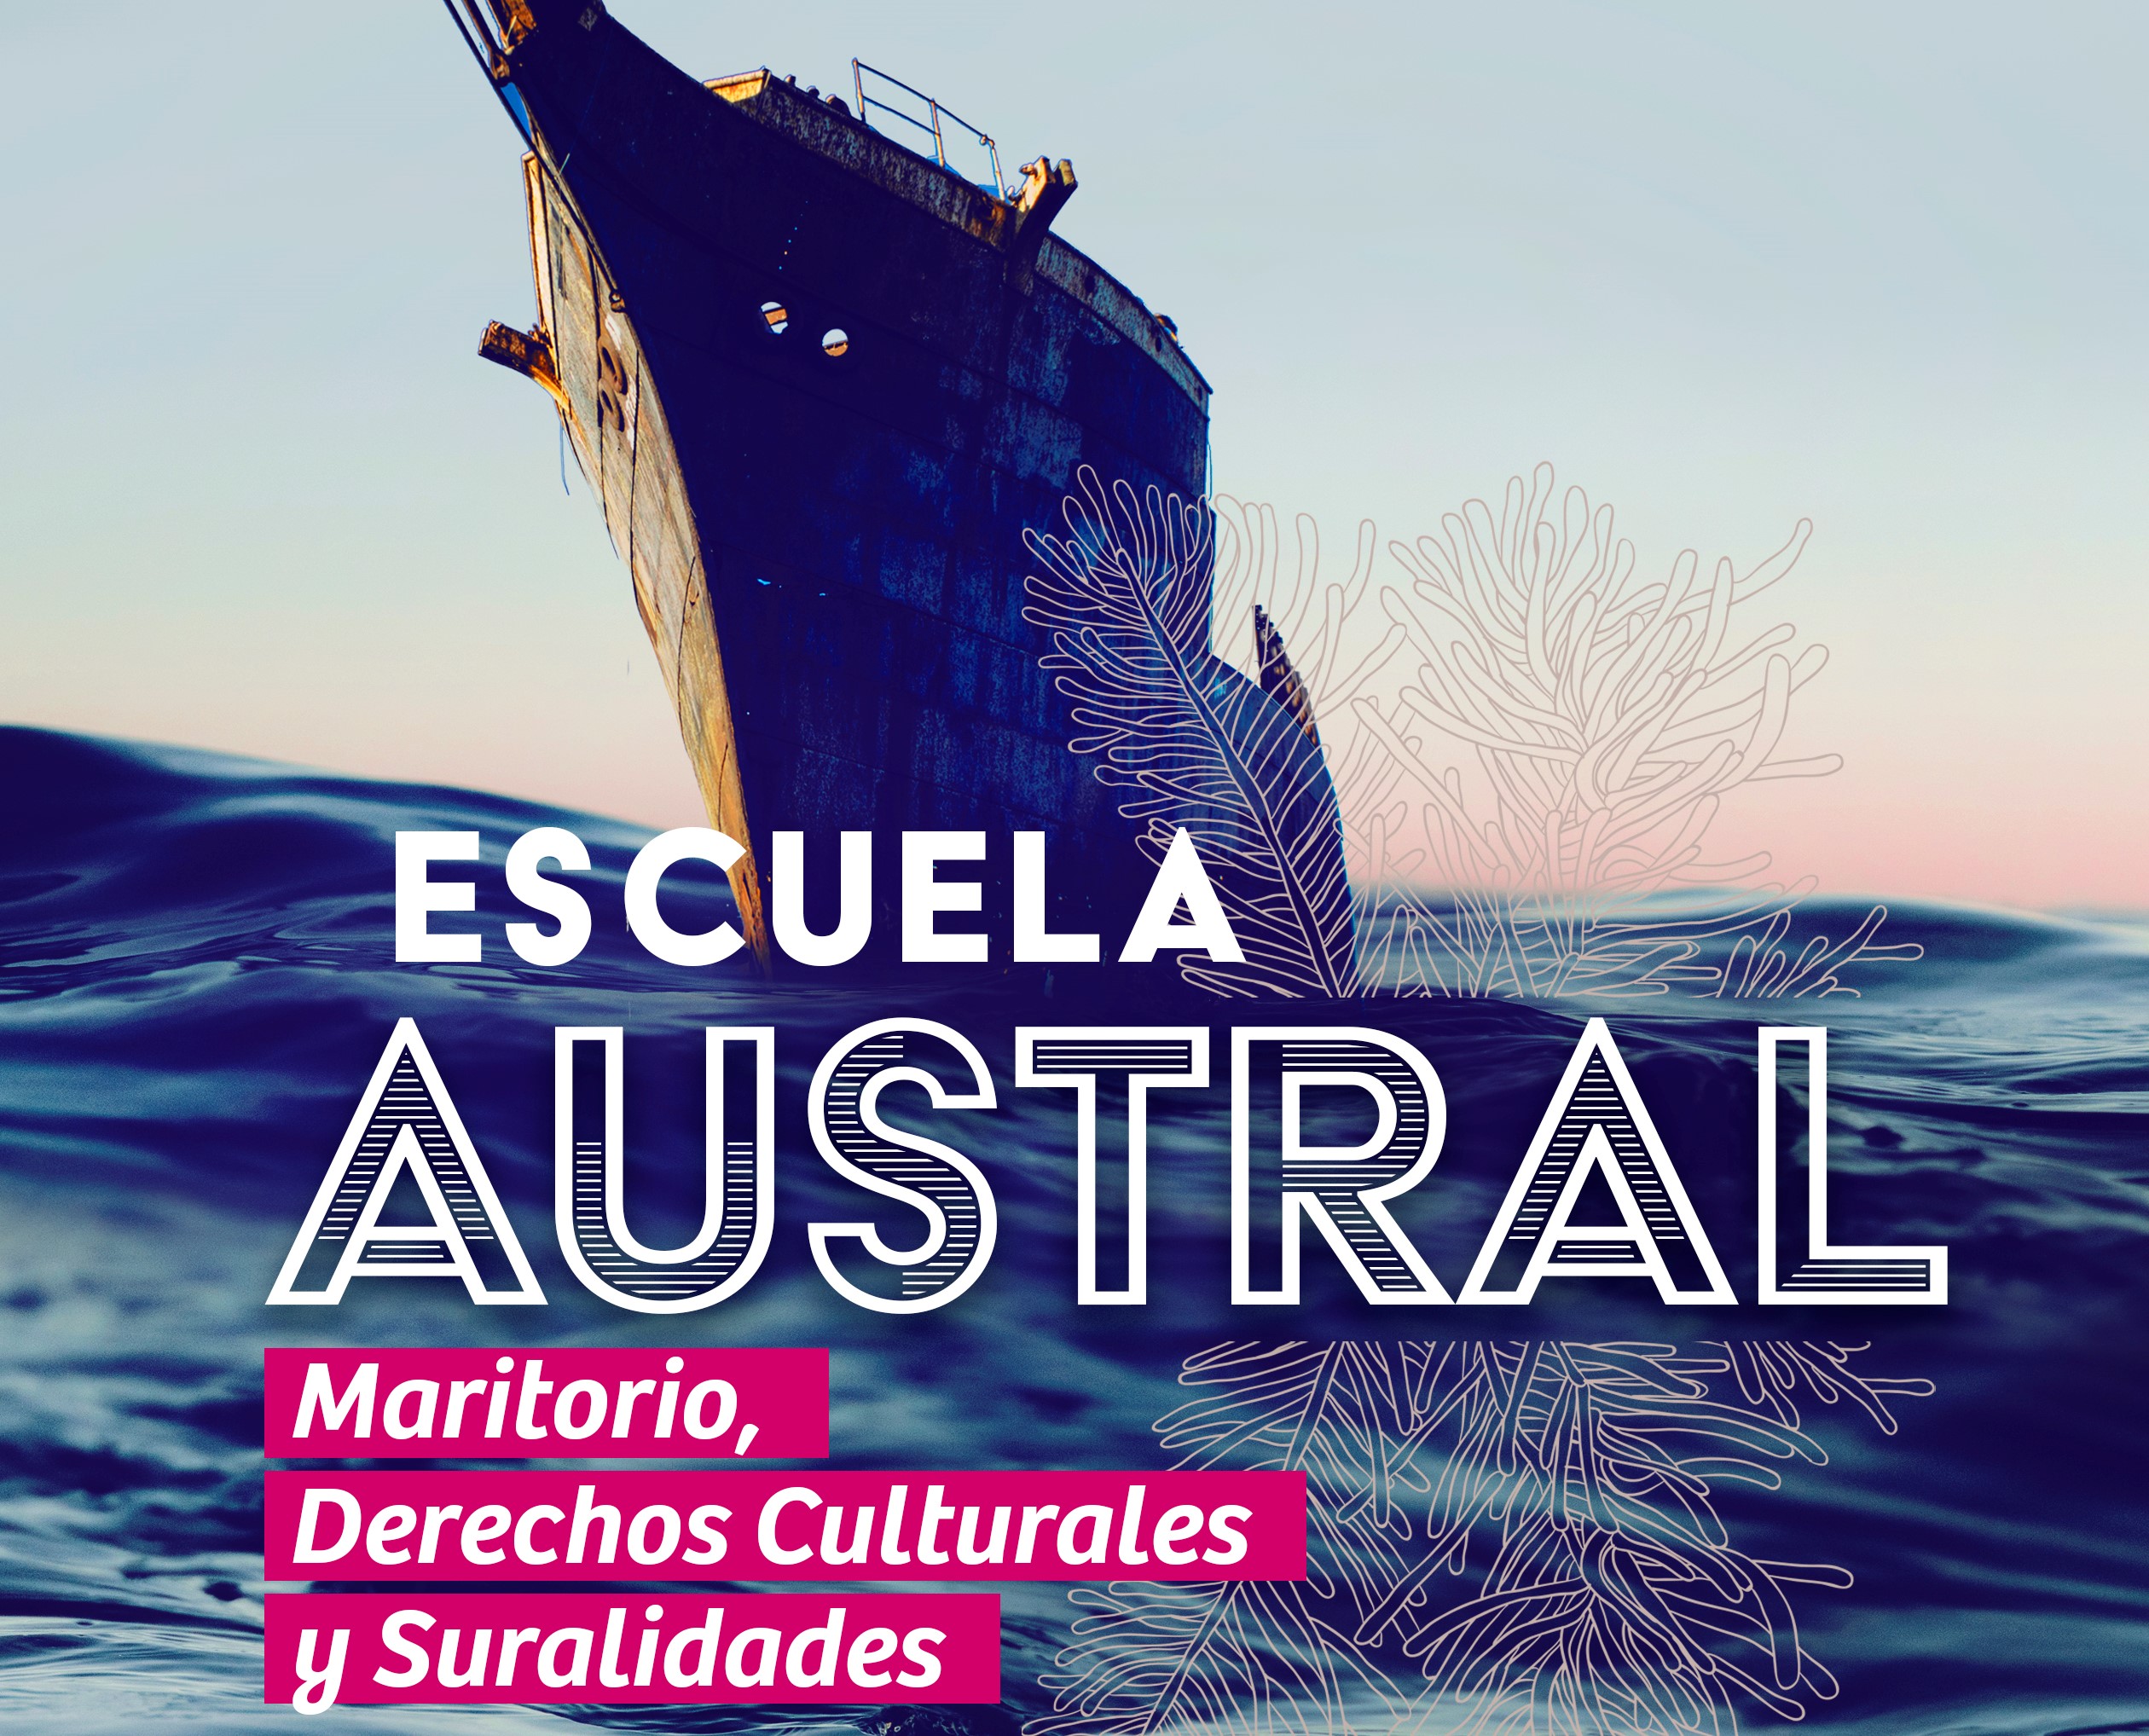 Ensamble ULagos ofrecerá concierto sobre el Estrecho de Magallanes en inauguración de Escuela Austral